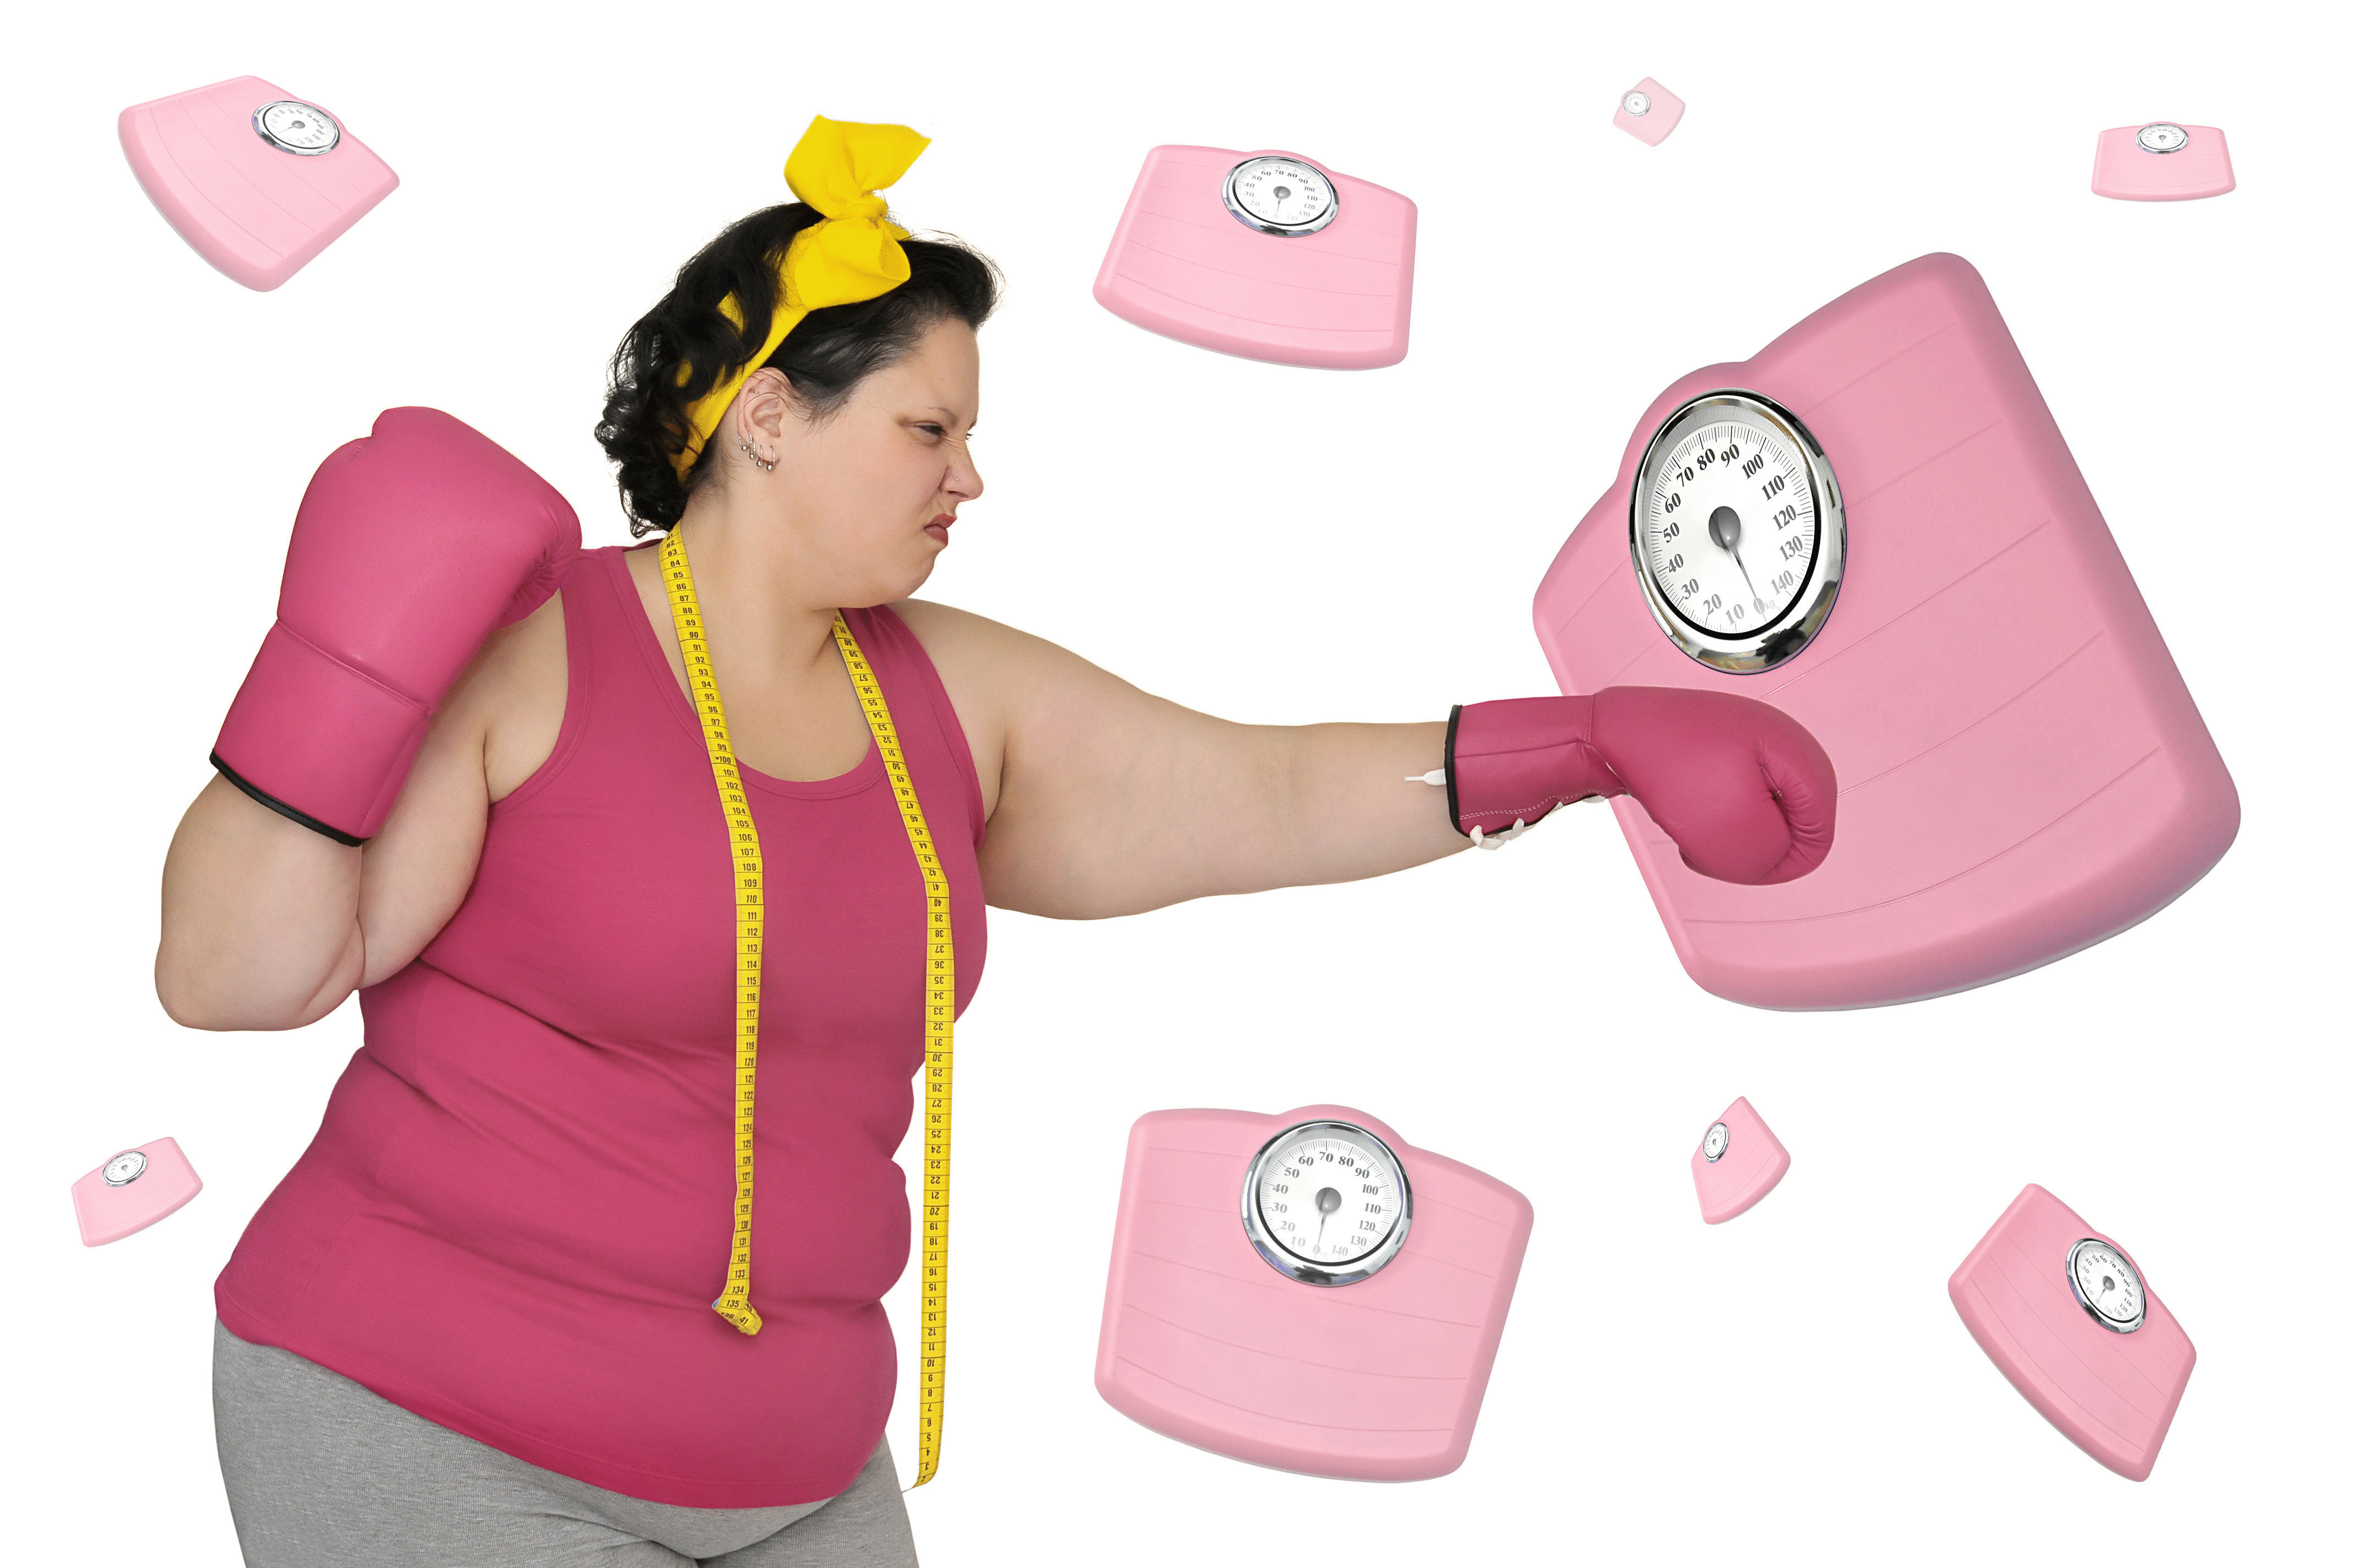 Похудеть к врачу обратиться. Лишний вес. Борьба с лишним весом. Женщина с лишком весом. Весы похудение.